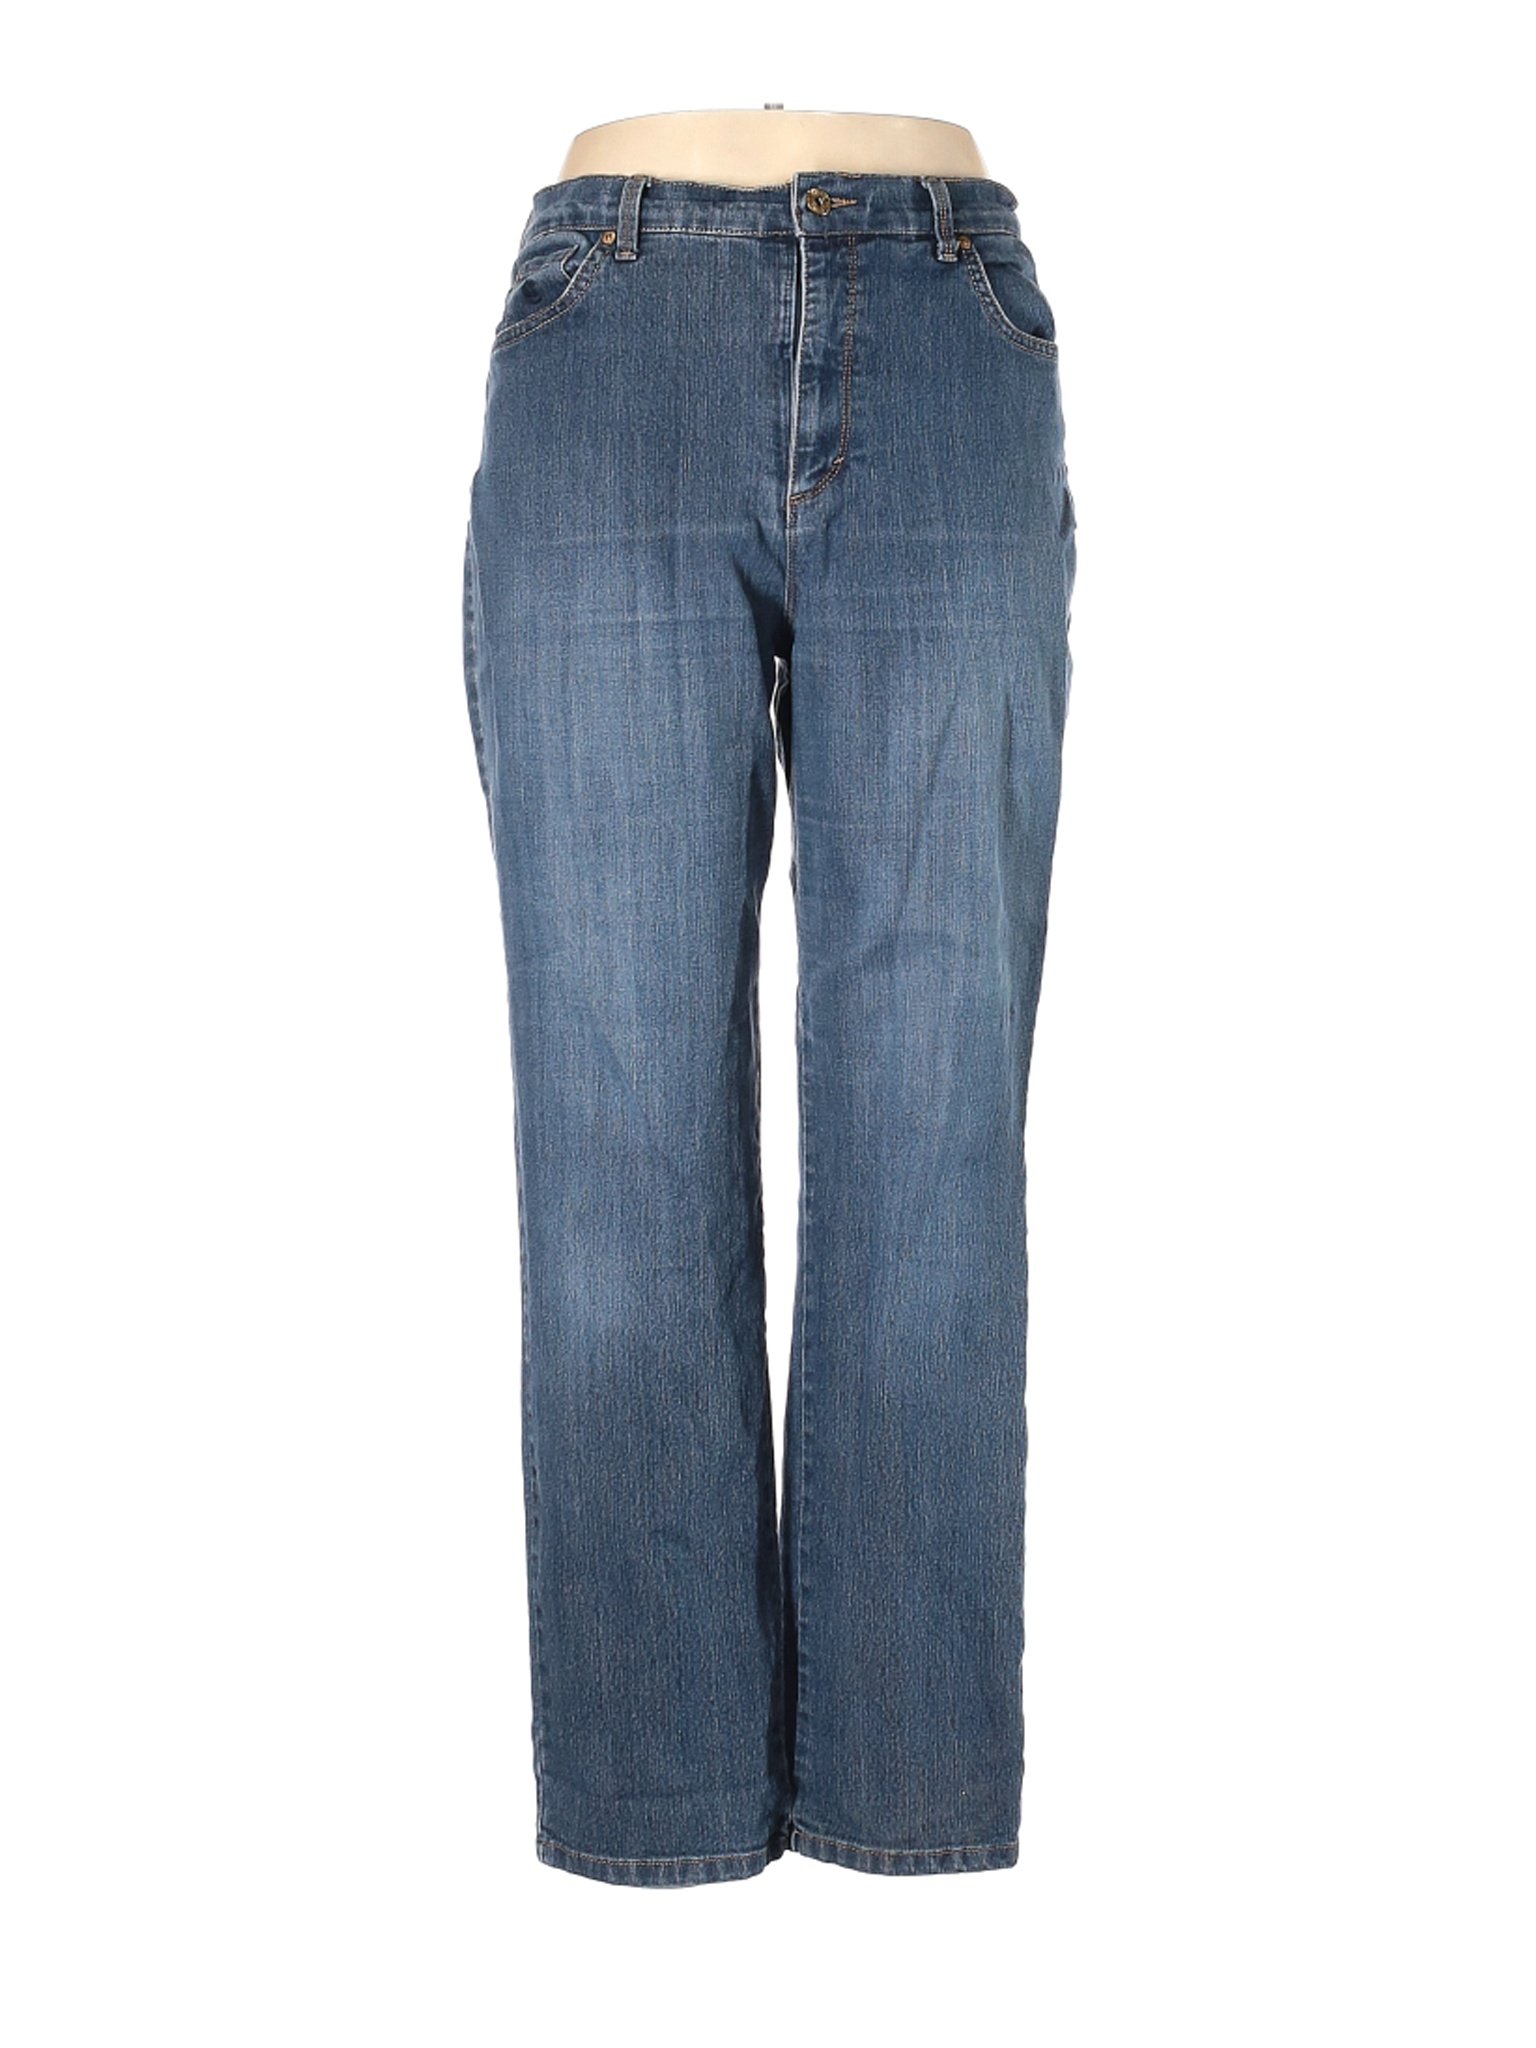 Gloria Vanderbilt Women Blue Jeans 14 | eBay